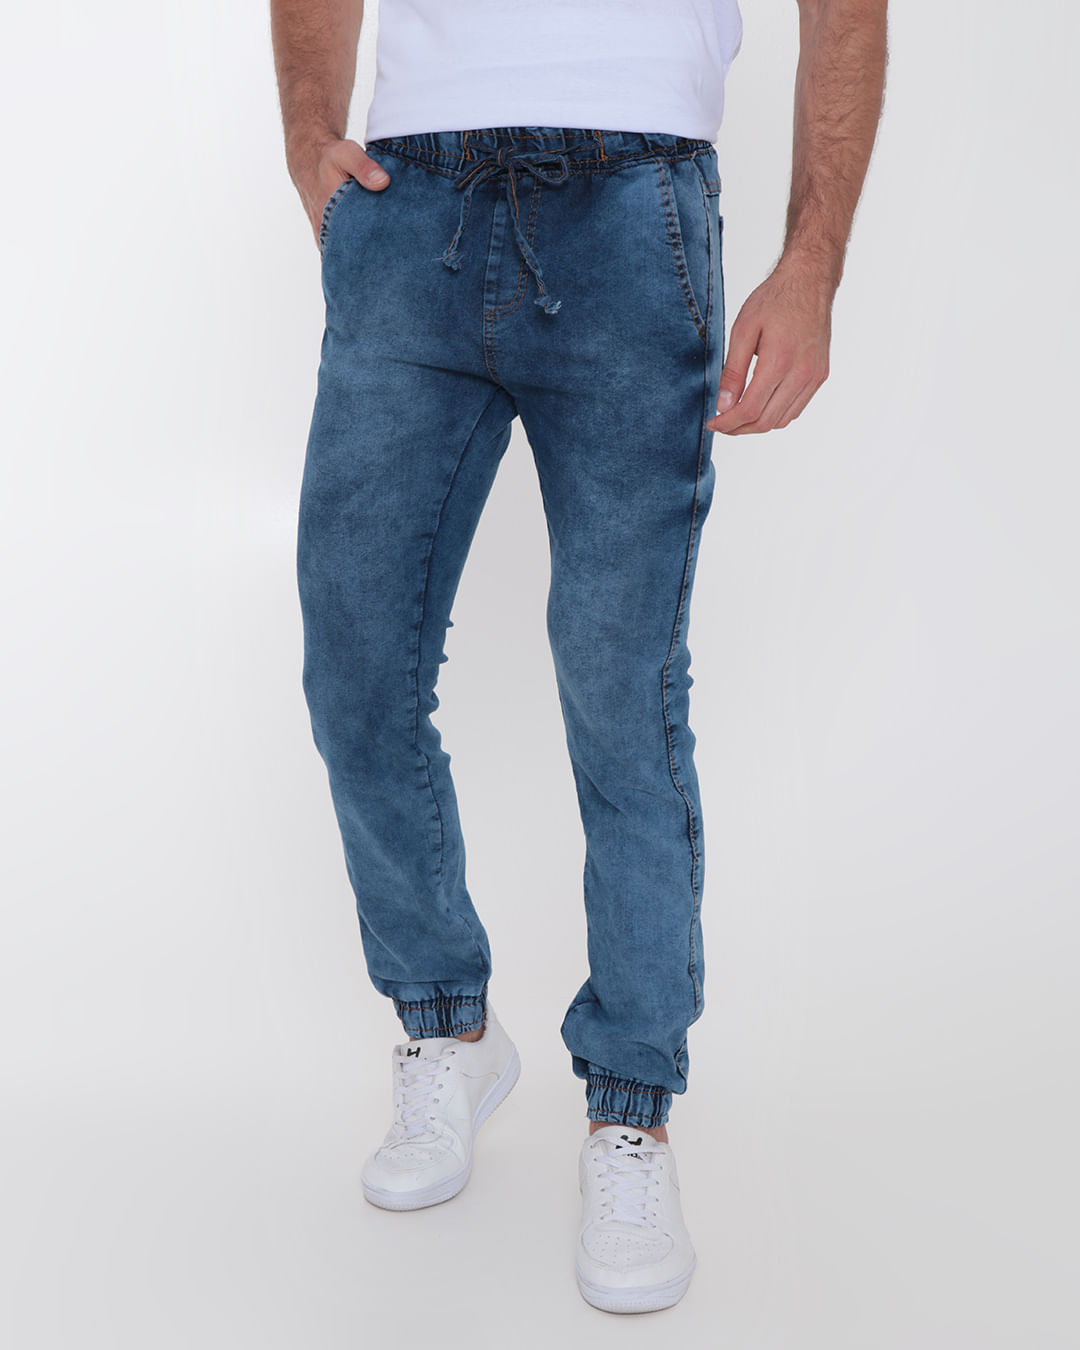 Calça Jeans Masculina Casual Gangster Modelo Premium Básico - LOJAS BRANDS